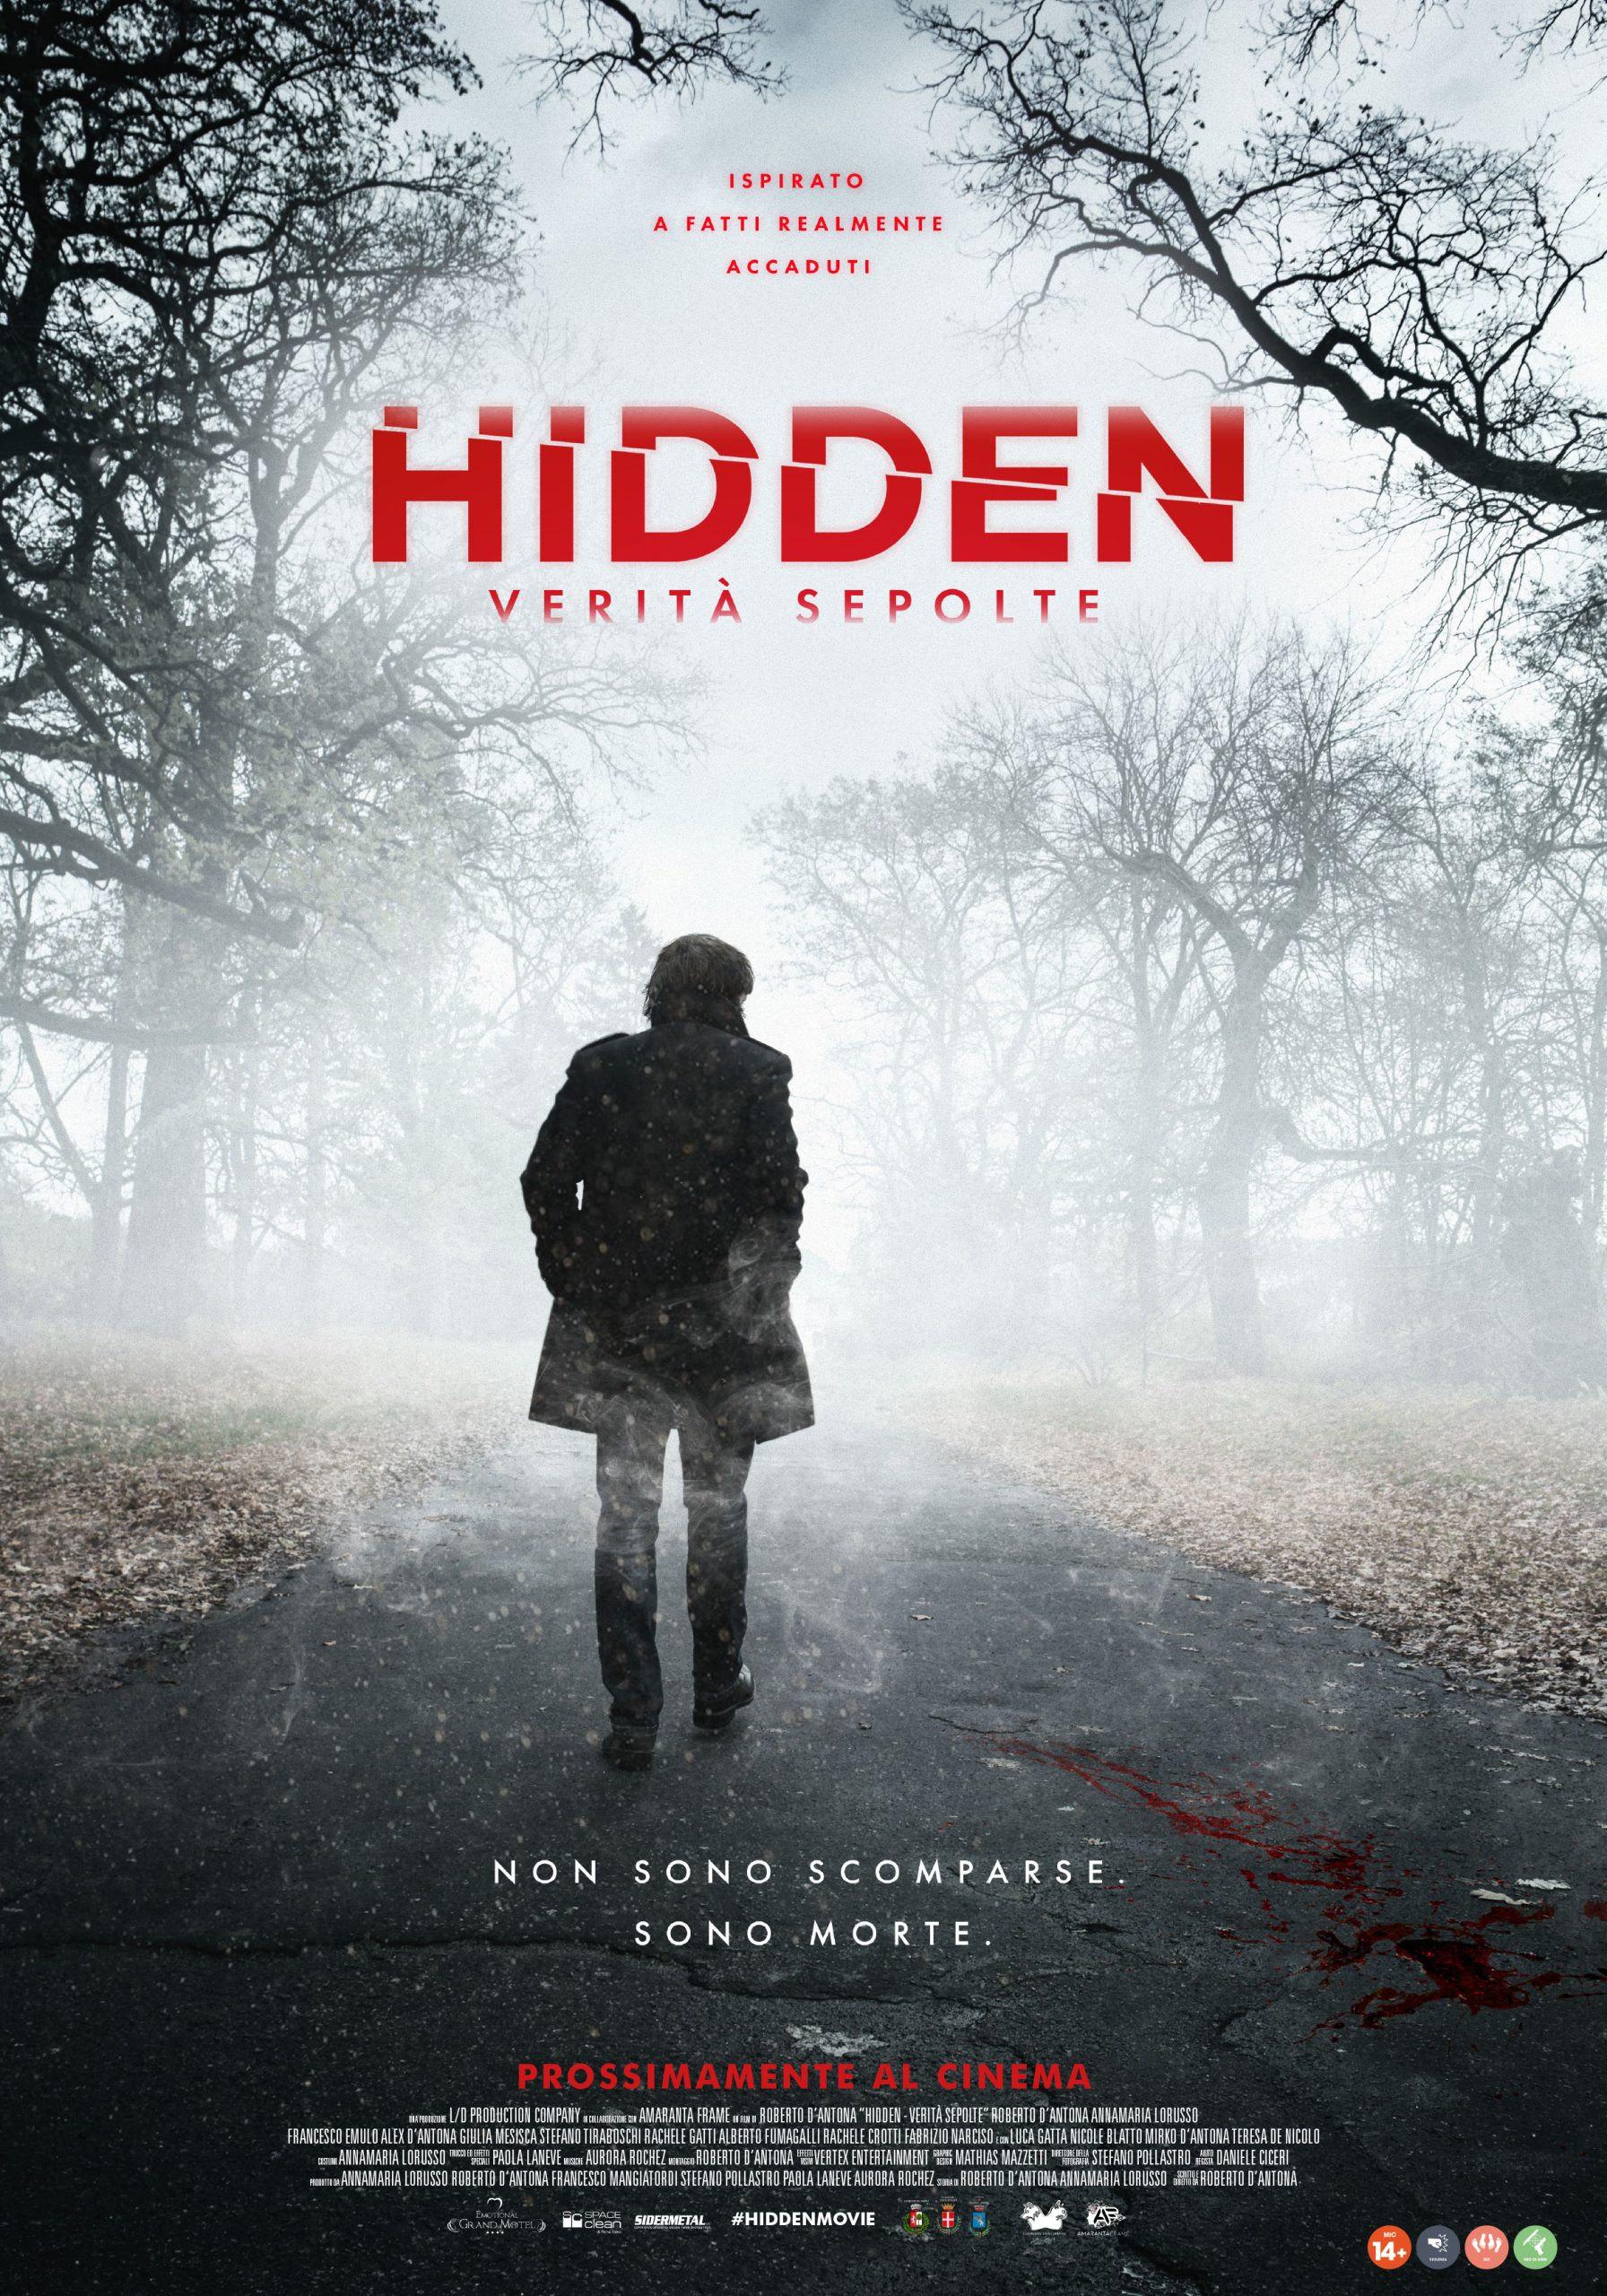 [NEWS] Hidden – Verità Sepolte a febbraio nelle sale. Il nuovo trailer